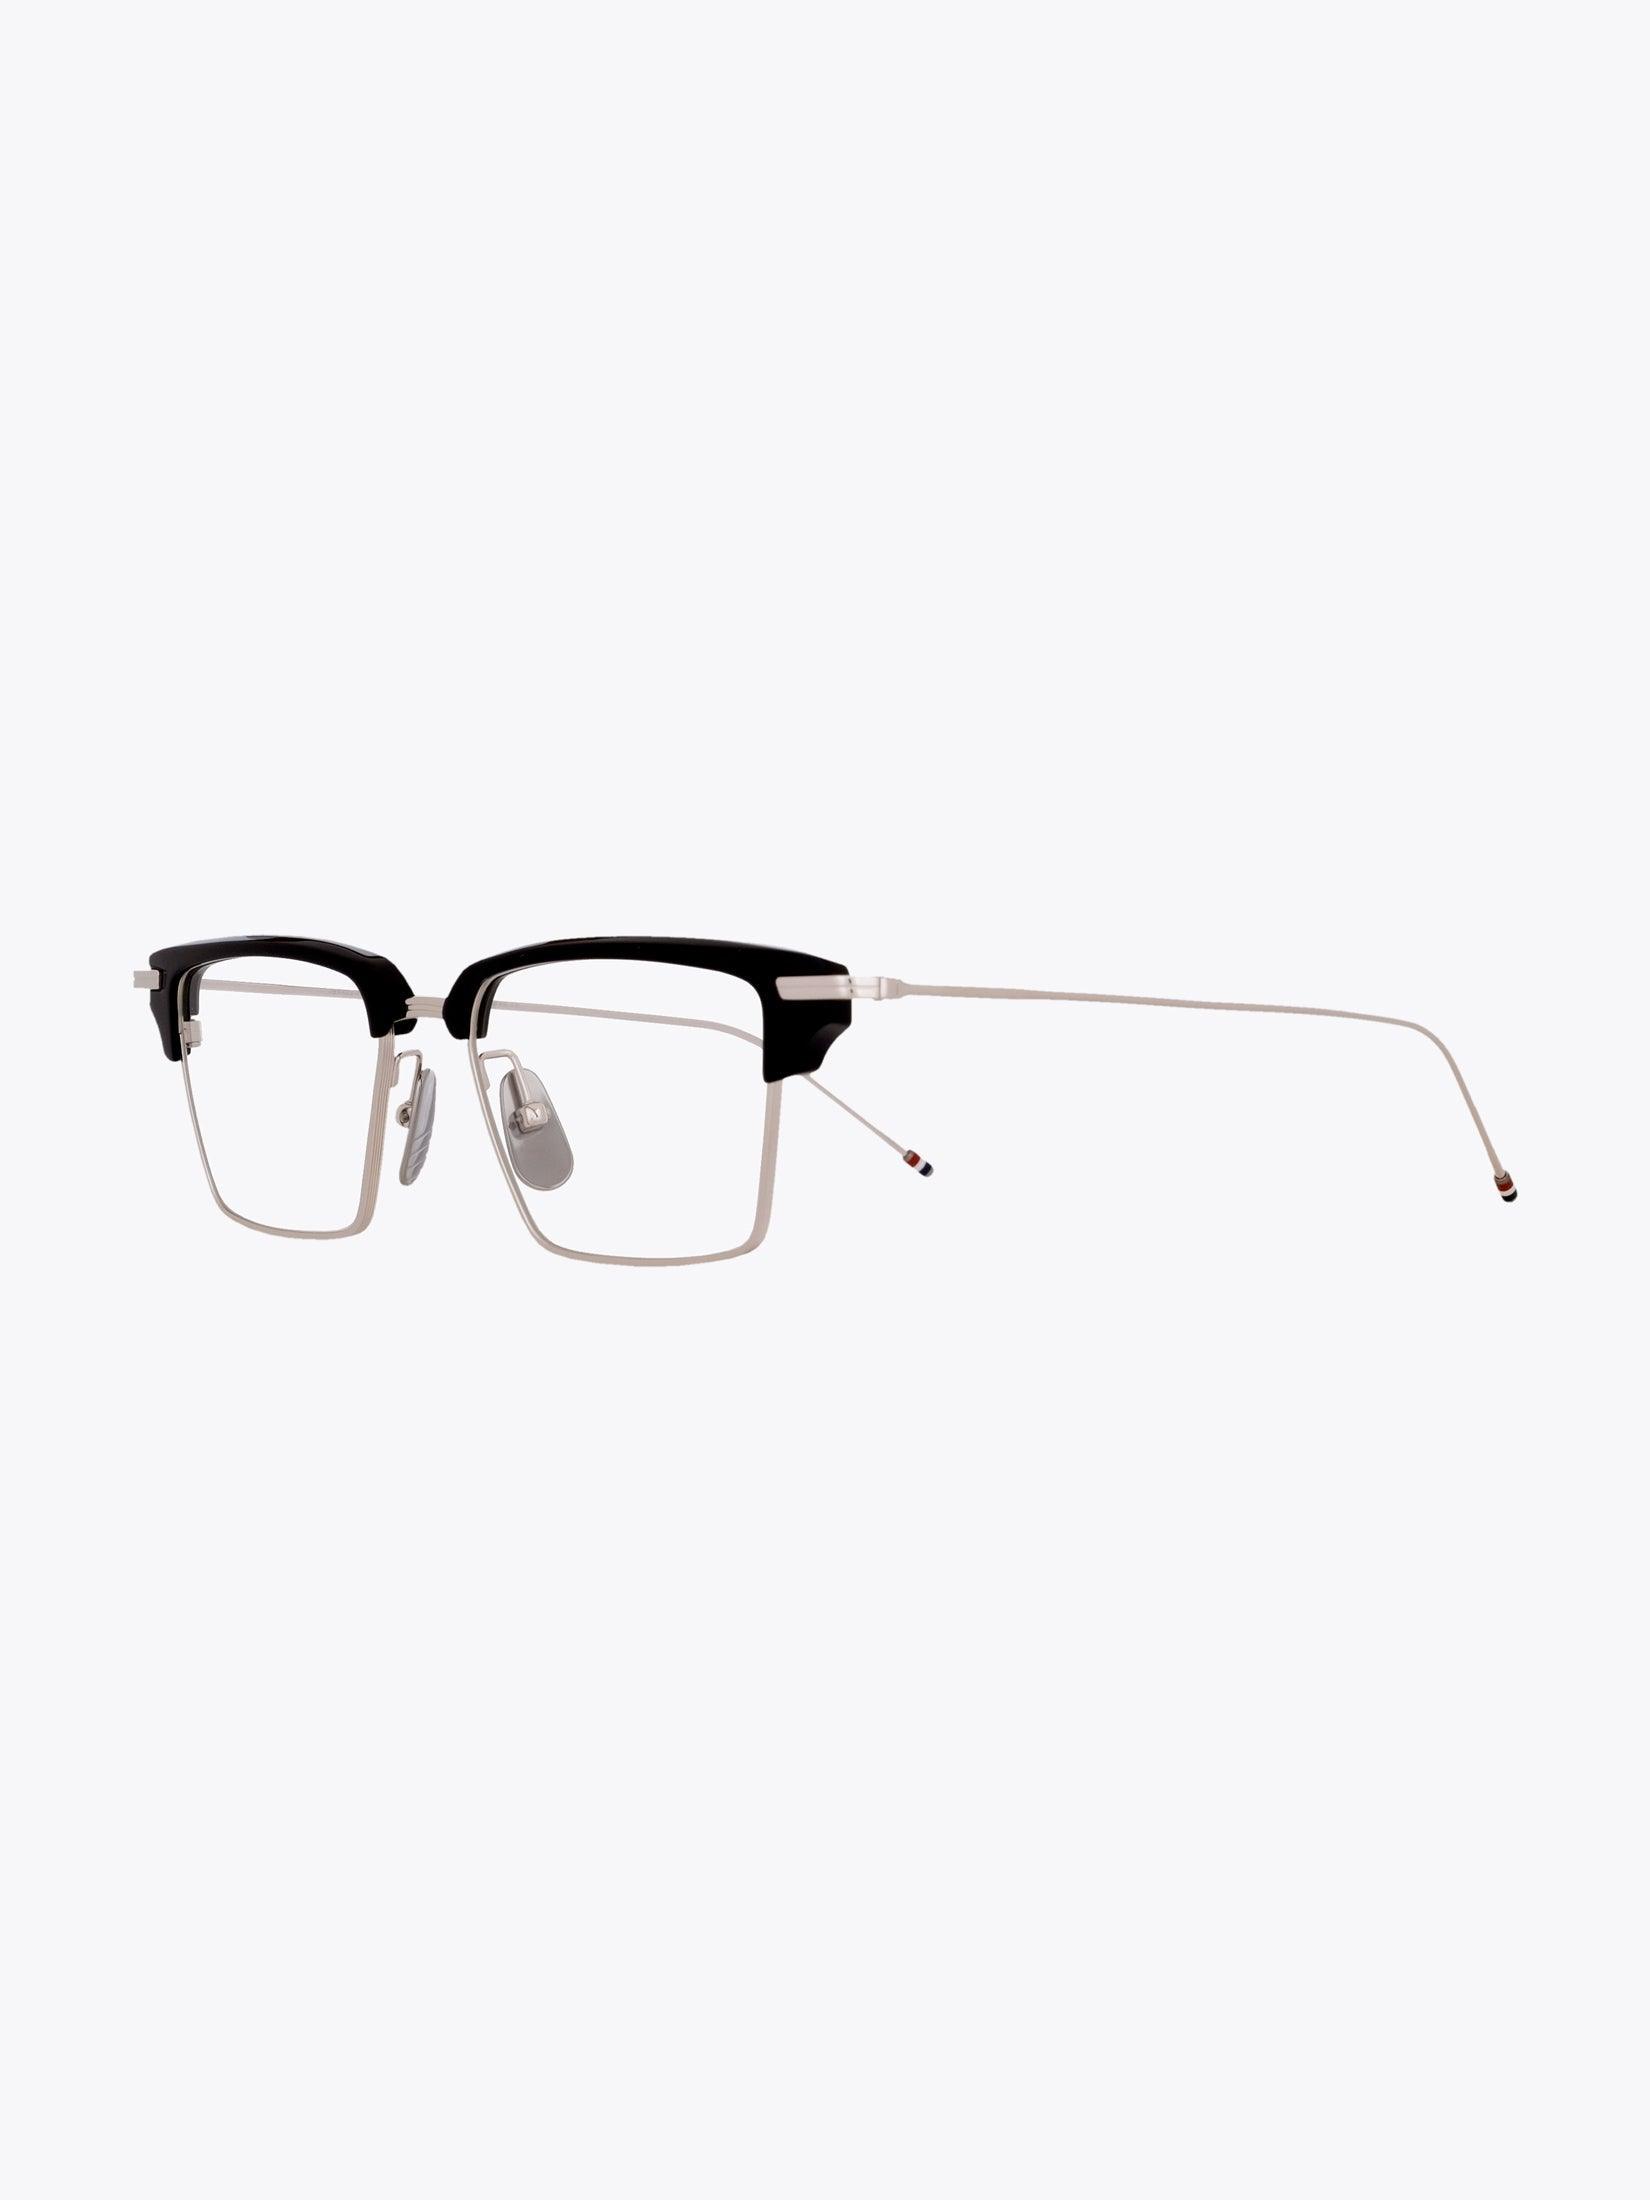 Thom Browne TB-422 Silver/Navy Eyeglasses